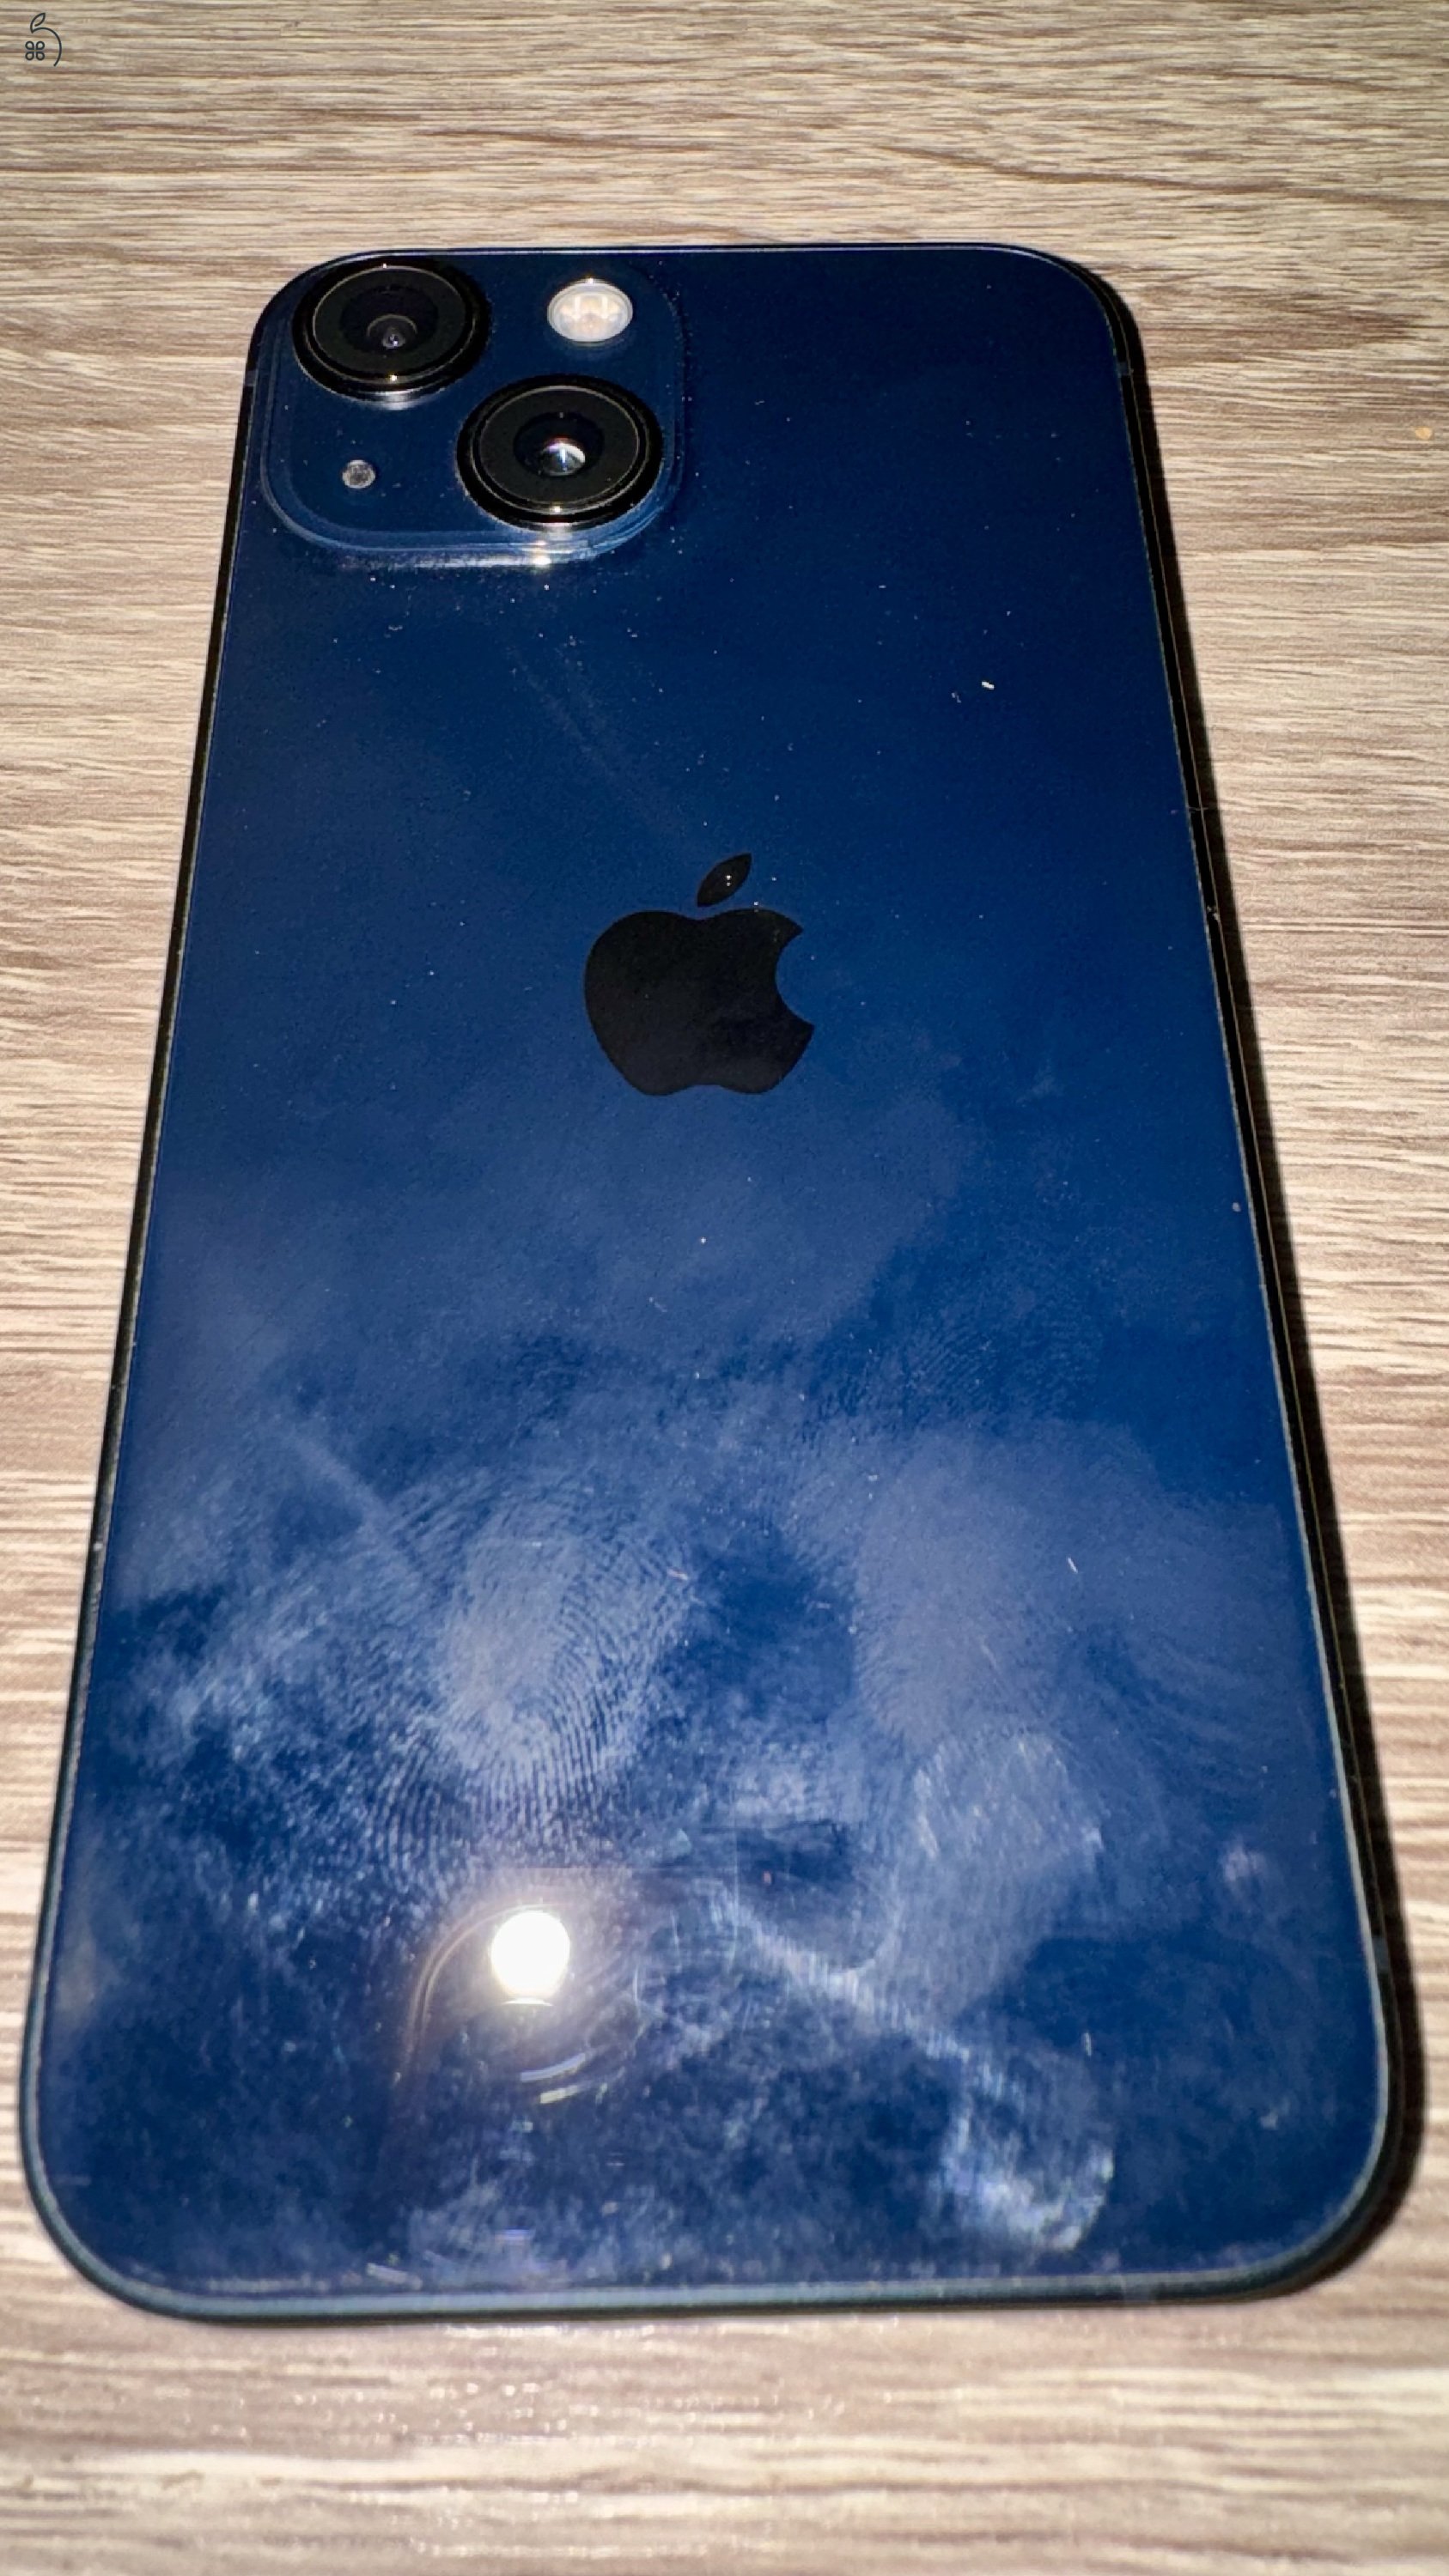 iPhone 13 mini, Midnight, 256 GB, Hálózatfüggetlen, 2 éves, karc és sérülésmentes, kitűnő állapot!